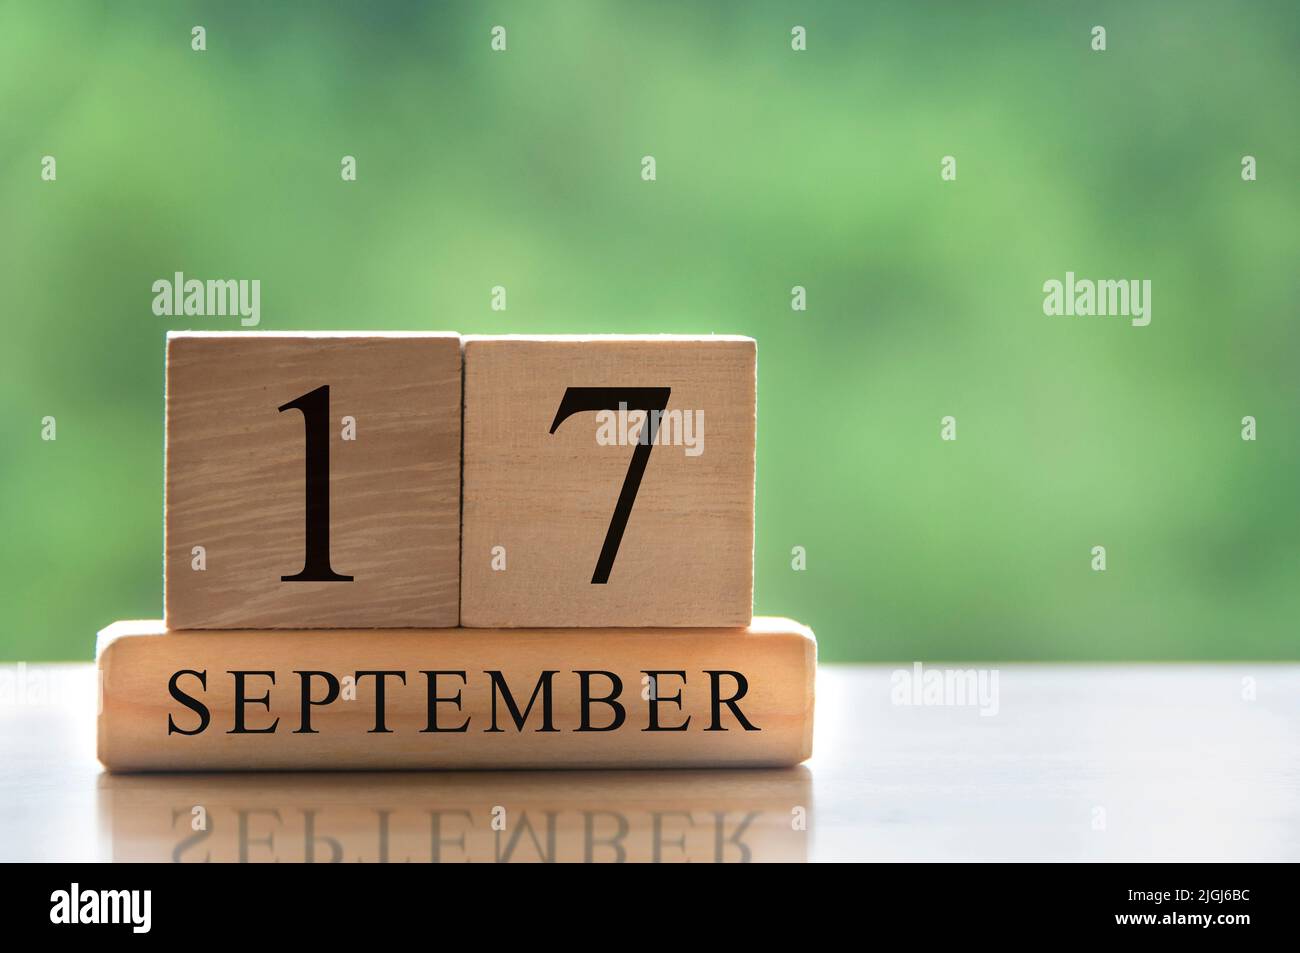 Texte de date du calendrier 17 septembre sur des blocs de bois avec espace de copie pour les idées ou le texte. Concept d'espace de copie et de calendrier Banque D'Images